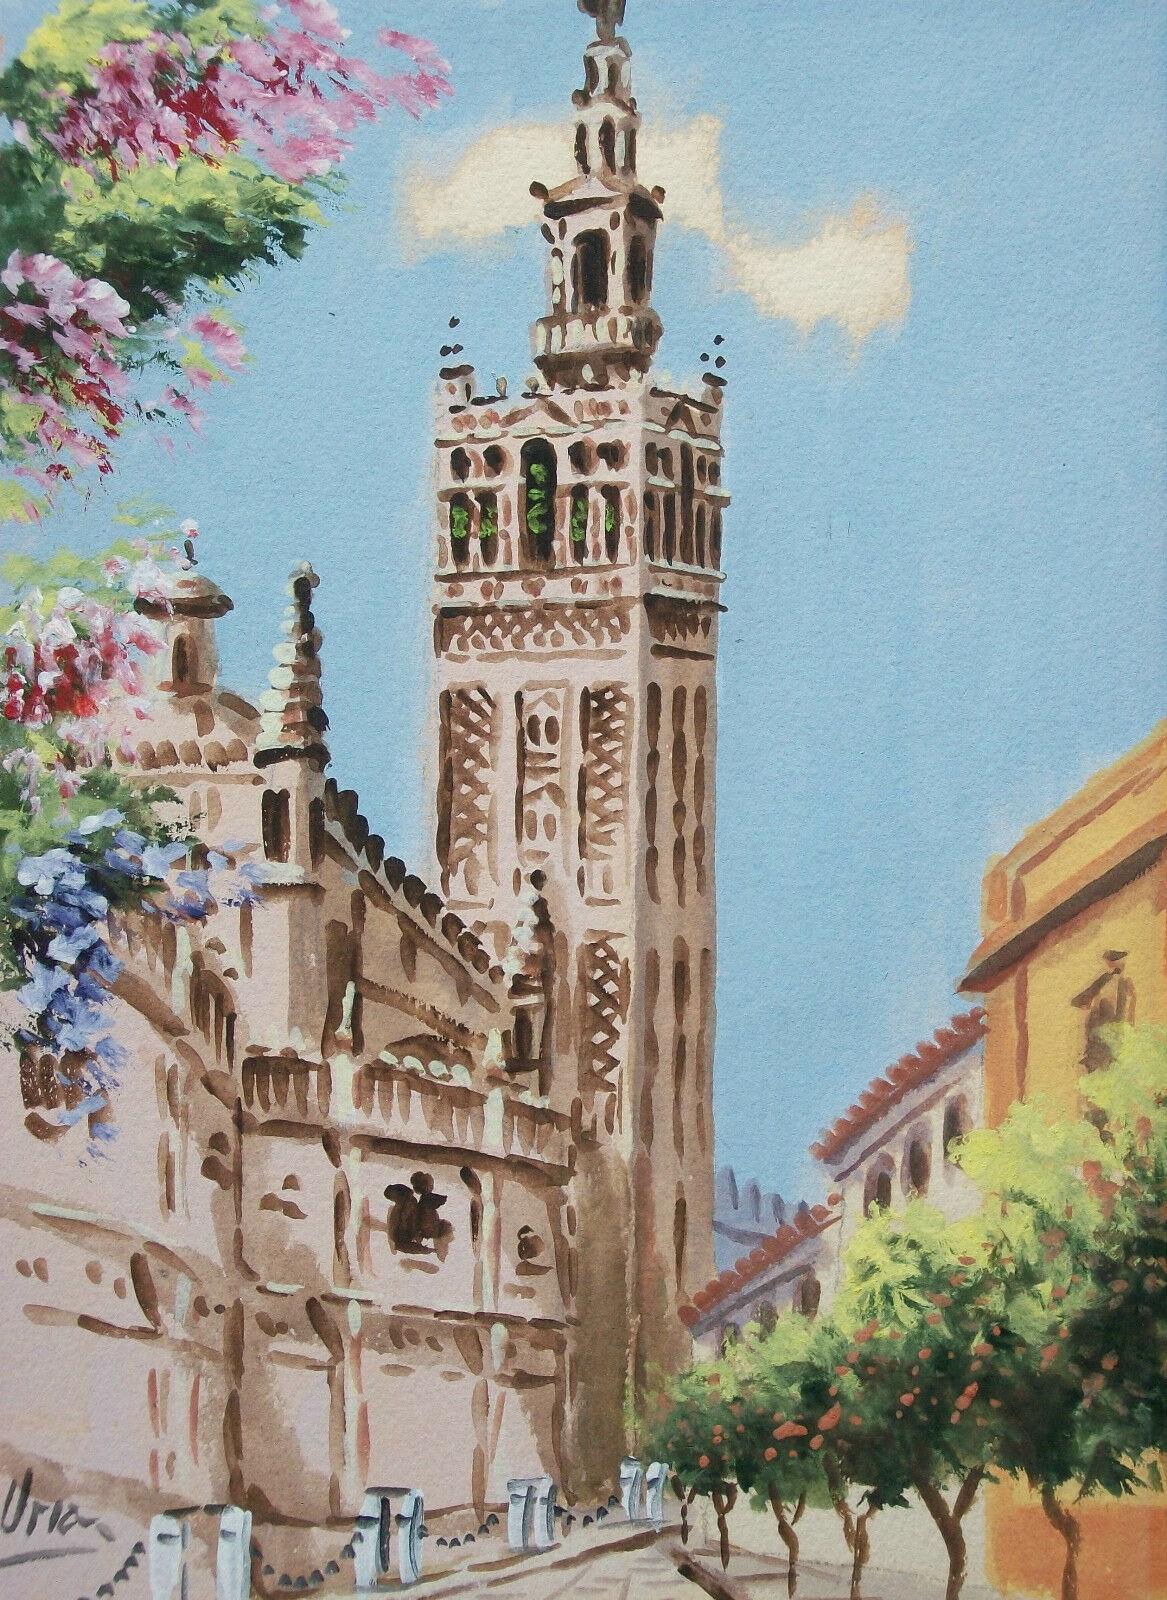 Antonio Uria Monzon (1929-1996) - 'Sevilla' - Peinture à la gouache d'époque sur papier aquarelle GVA-PRO - La cathédrale Santa María de la Sede (plus connue sous le nom de cathédrale de Séville) se détache sur un ciel bleu au printemps - belle